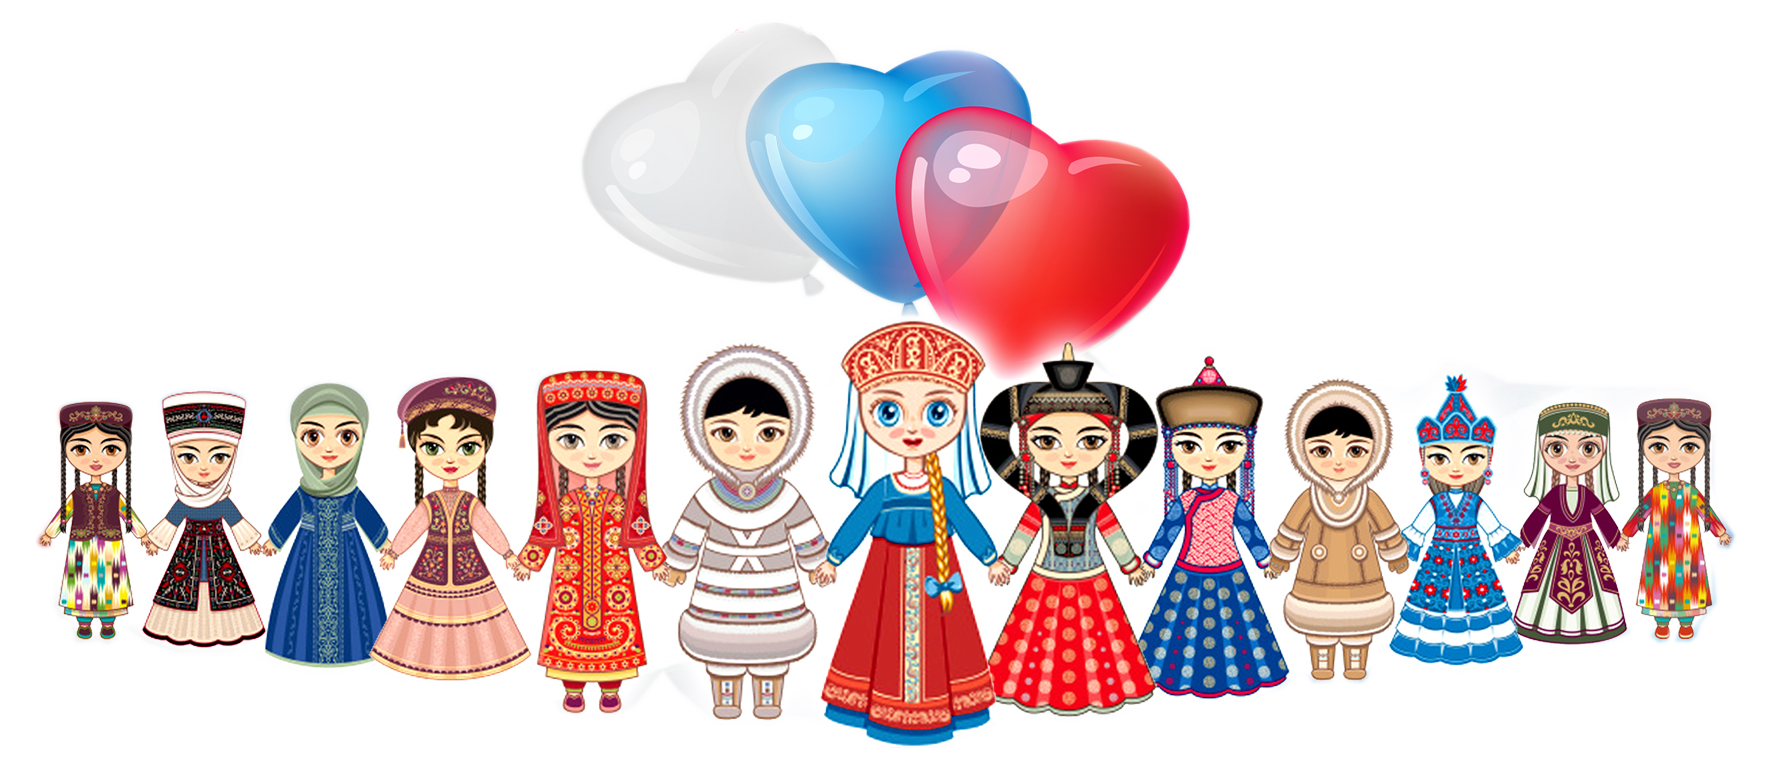 Картинка дружба народов казахстана для детей